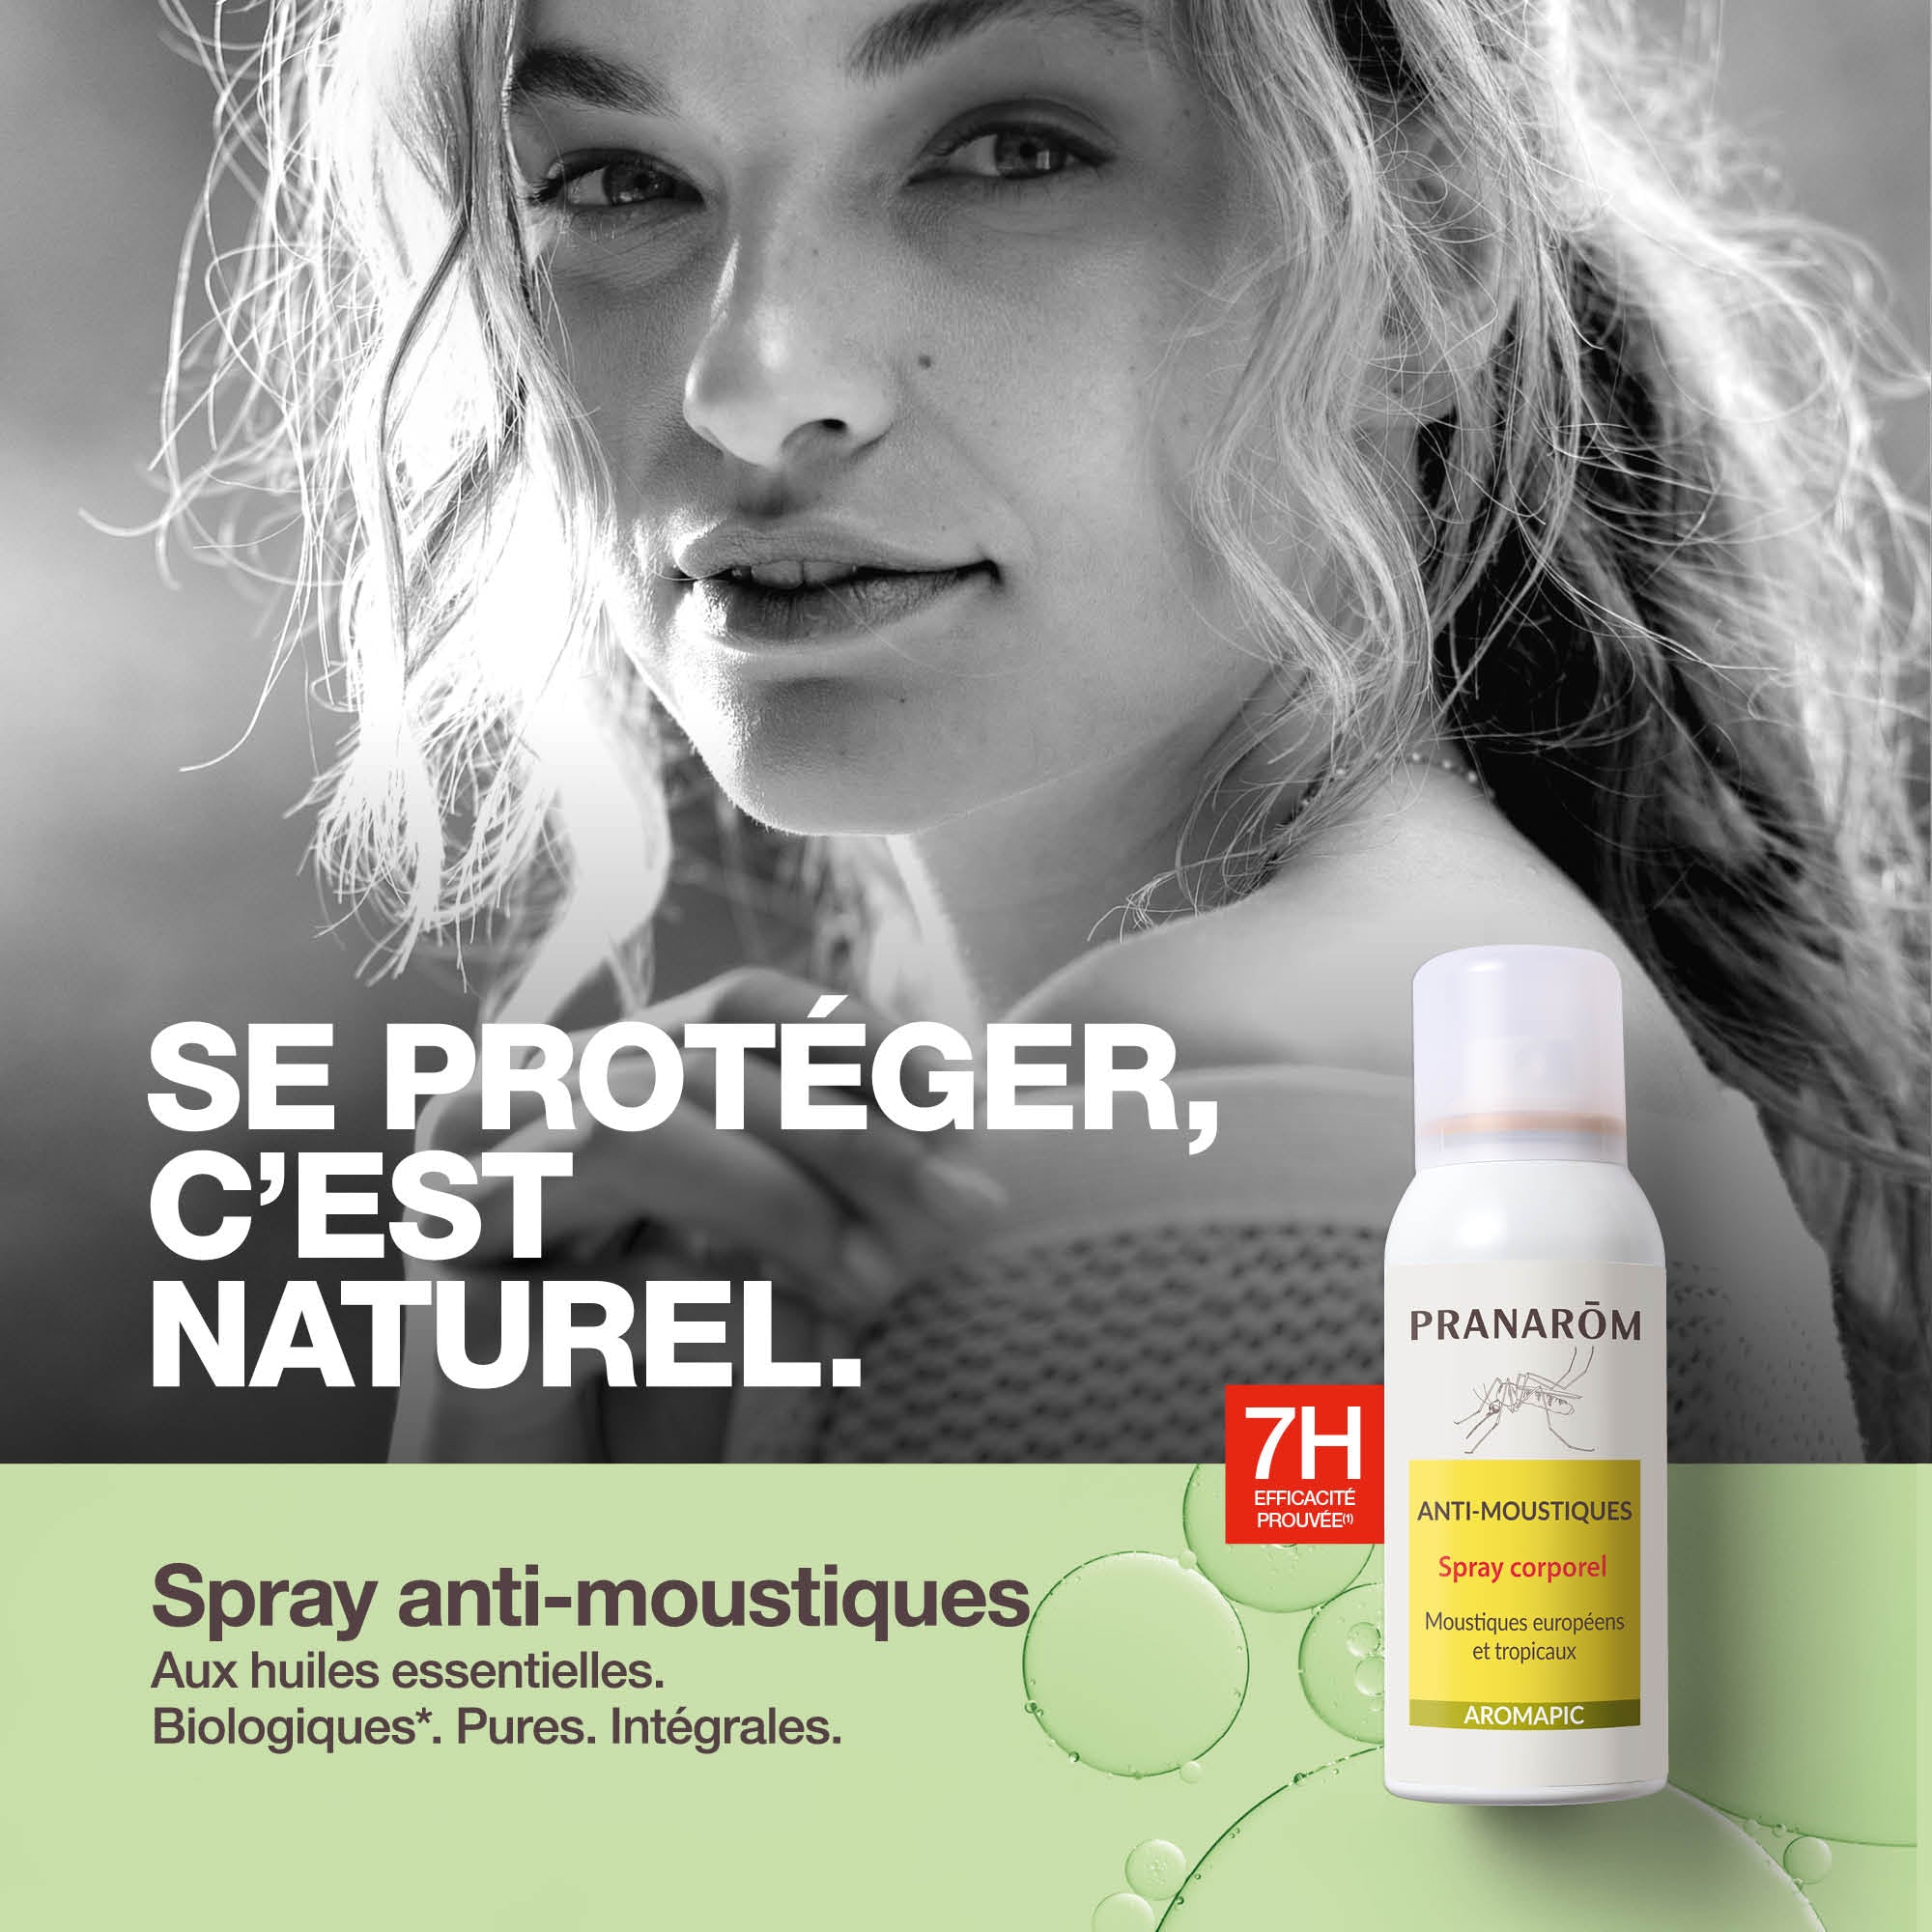 Pranarôm Spray Corps Anti-Moustique Bio Eco Efficacité 7 Heures